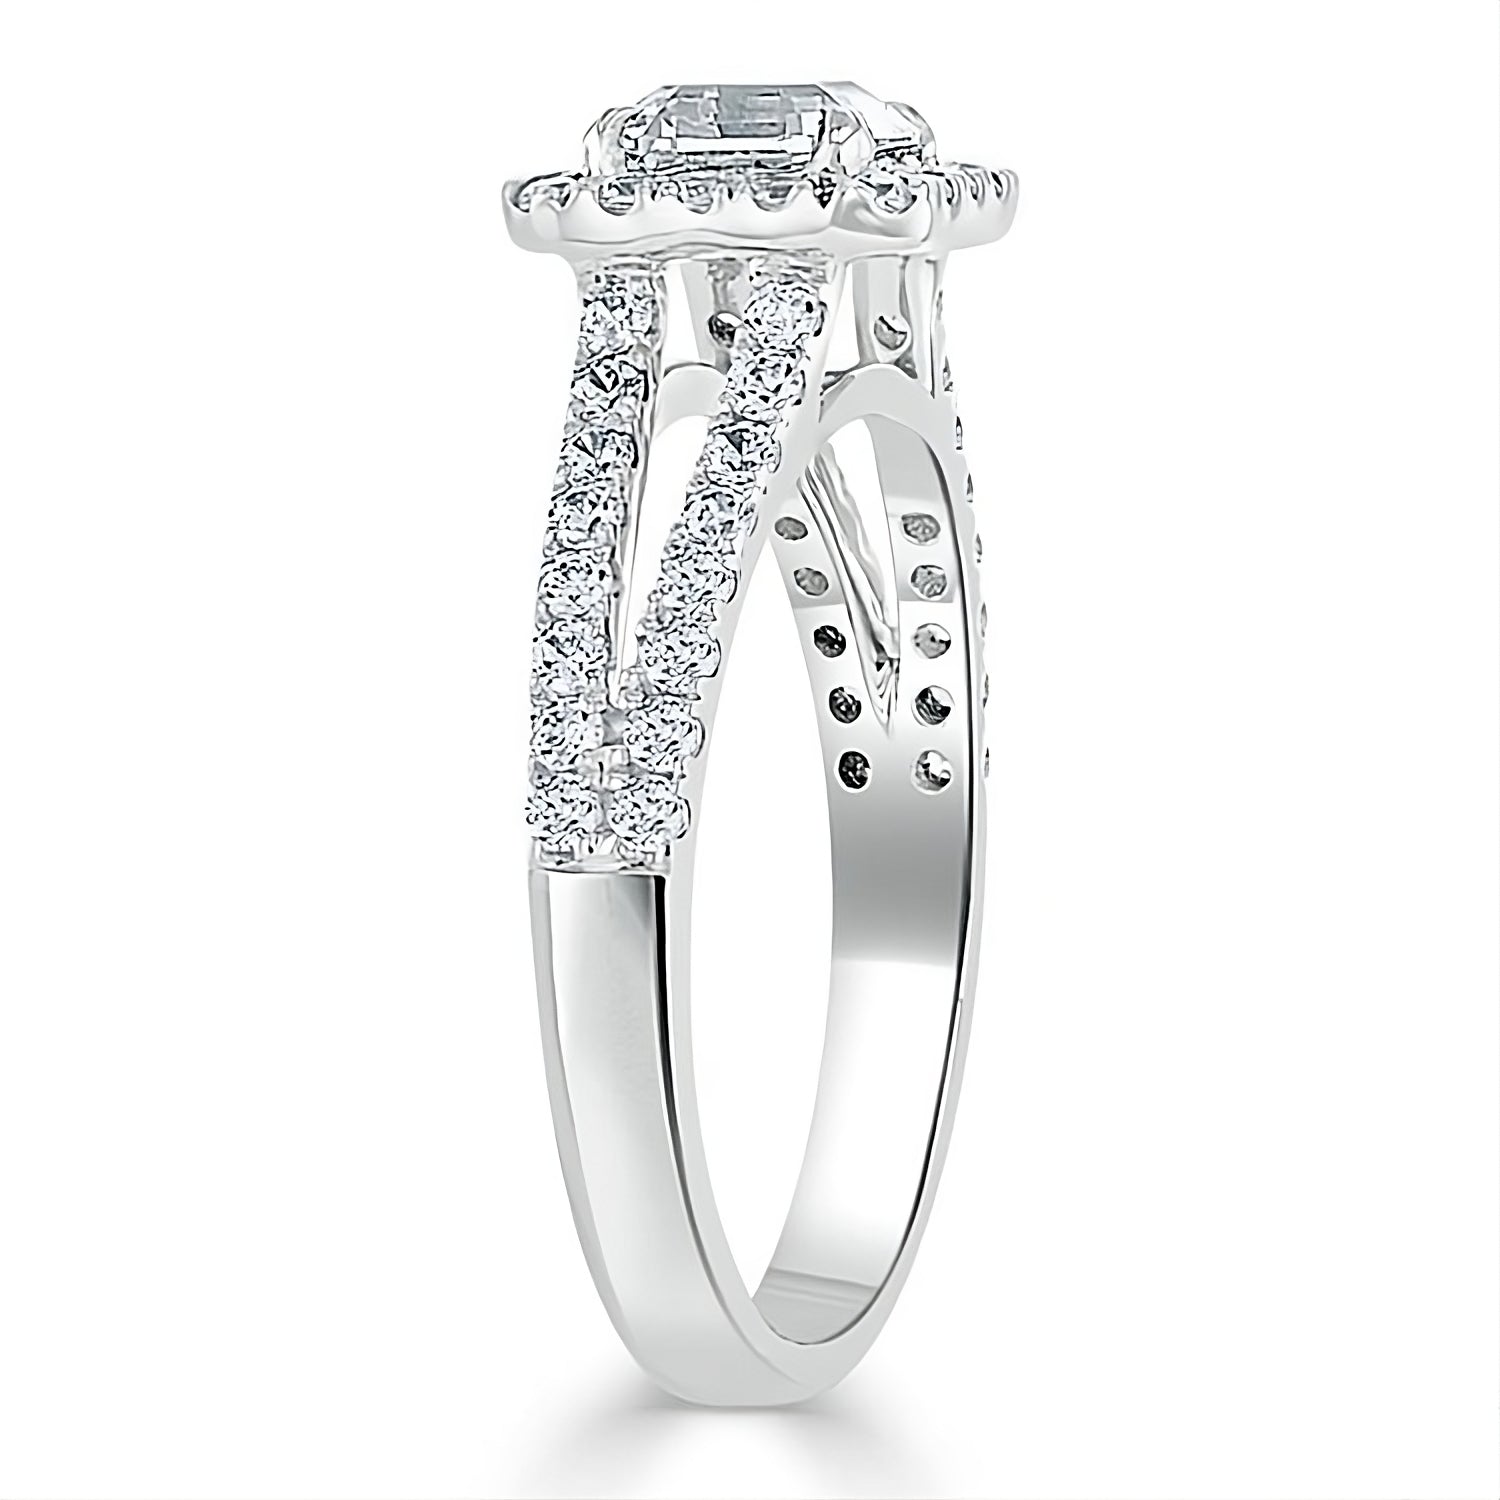 Engagement Ring 2 Carat White Gold Split Shank Cluster Diamond Ring